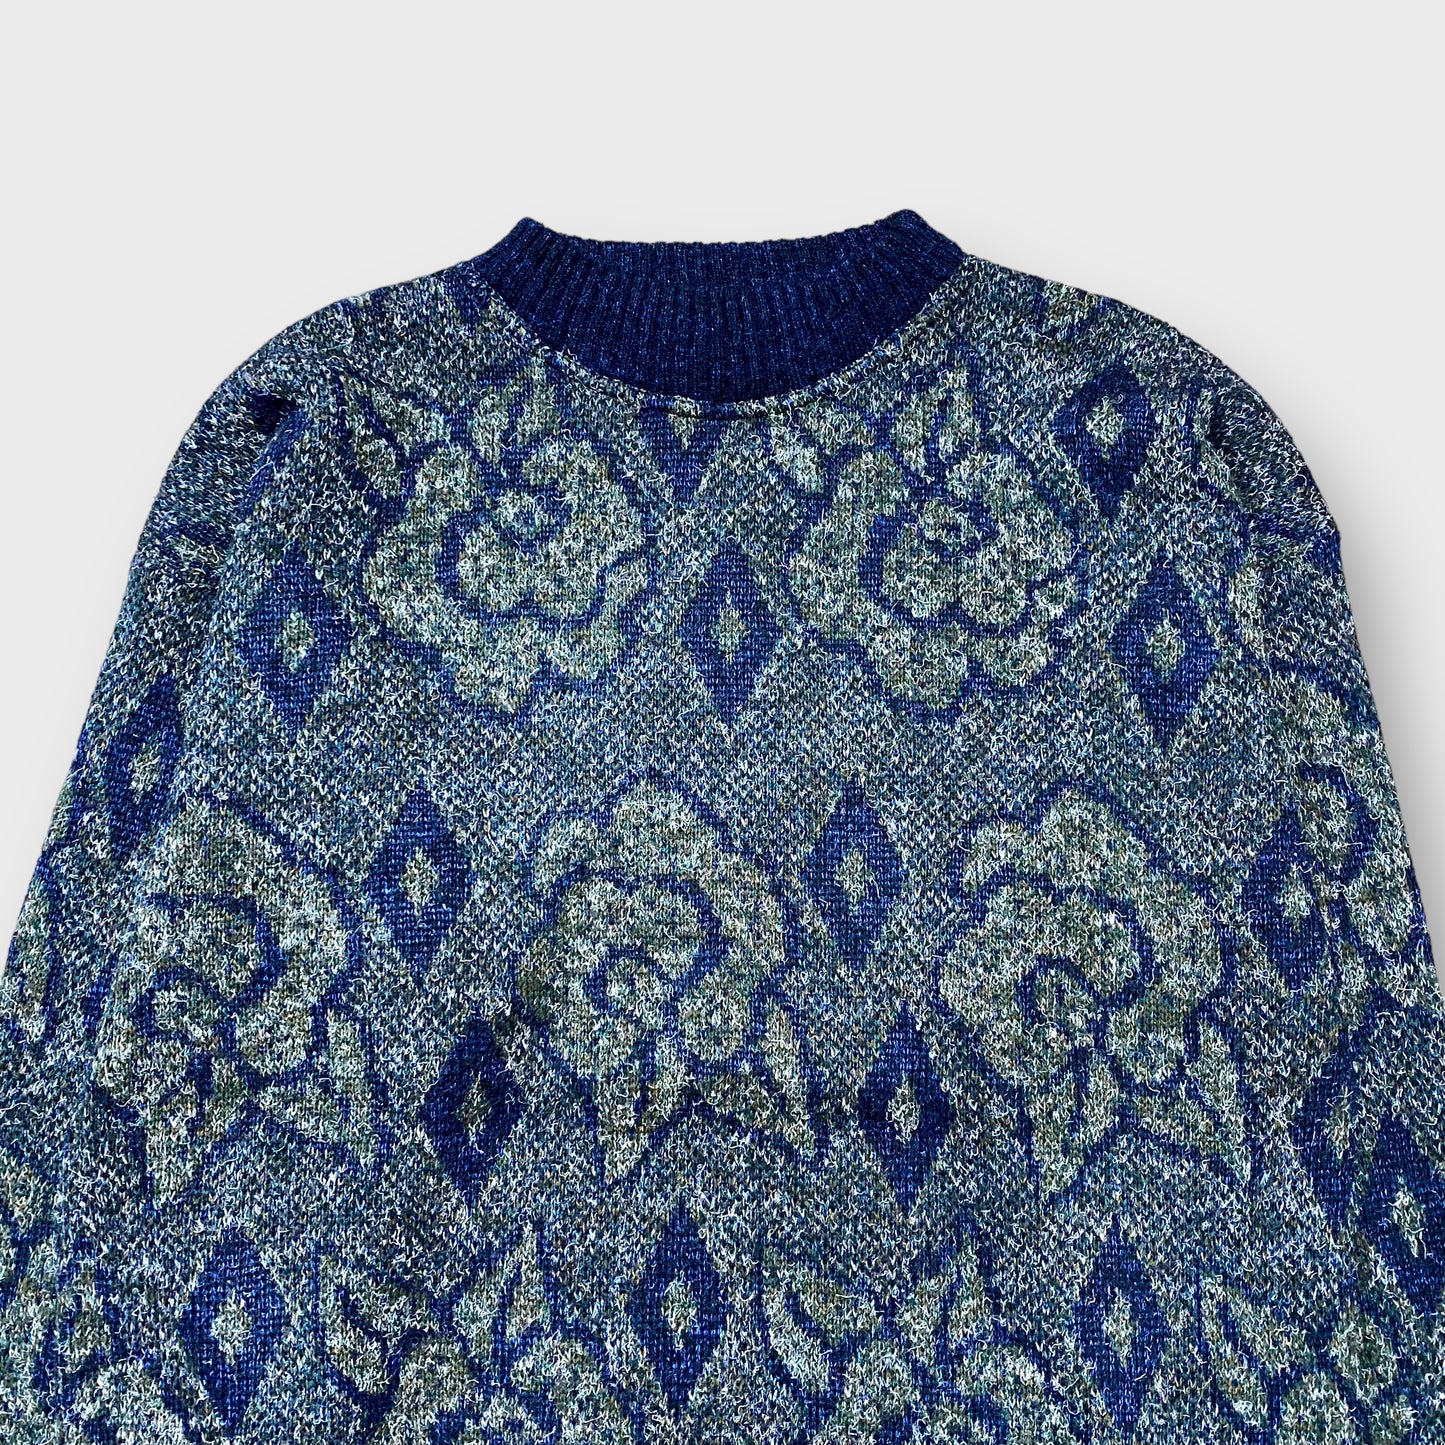 Flower × diamond pattern knit sweater